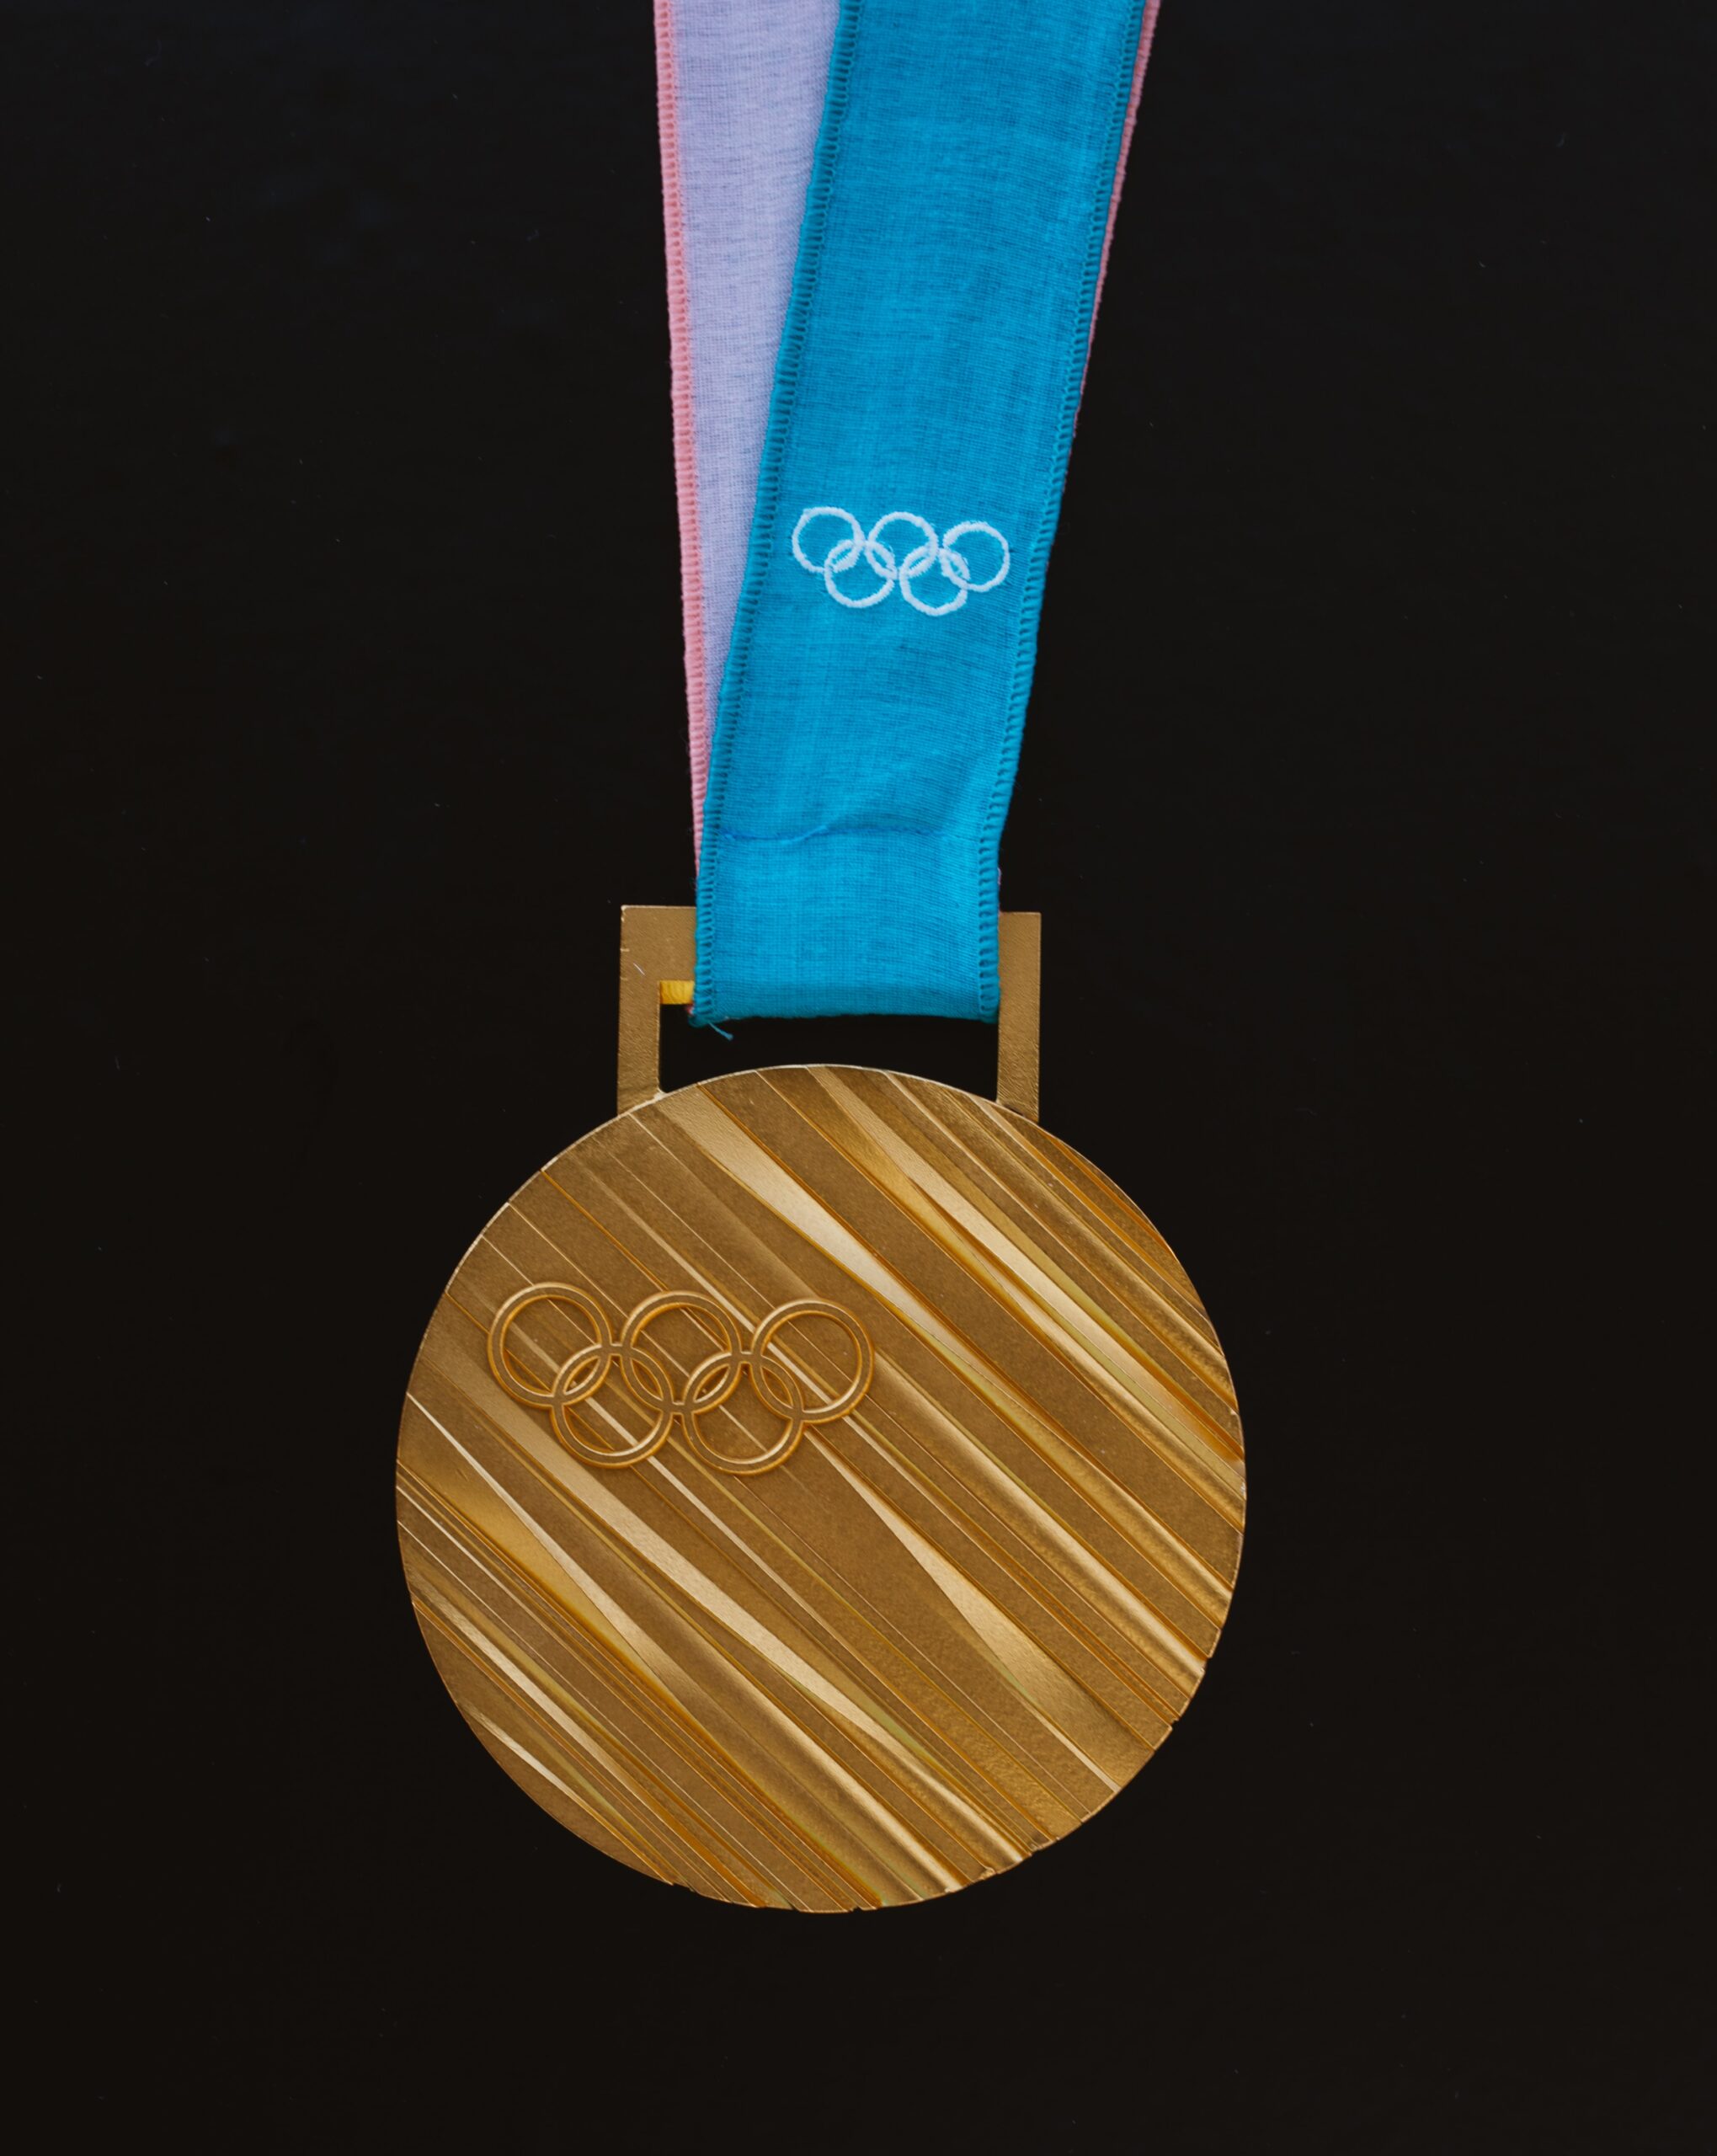 Medaillen-Design für Olympia 2012 in London